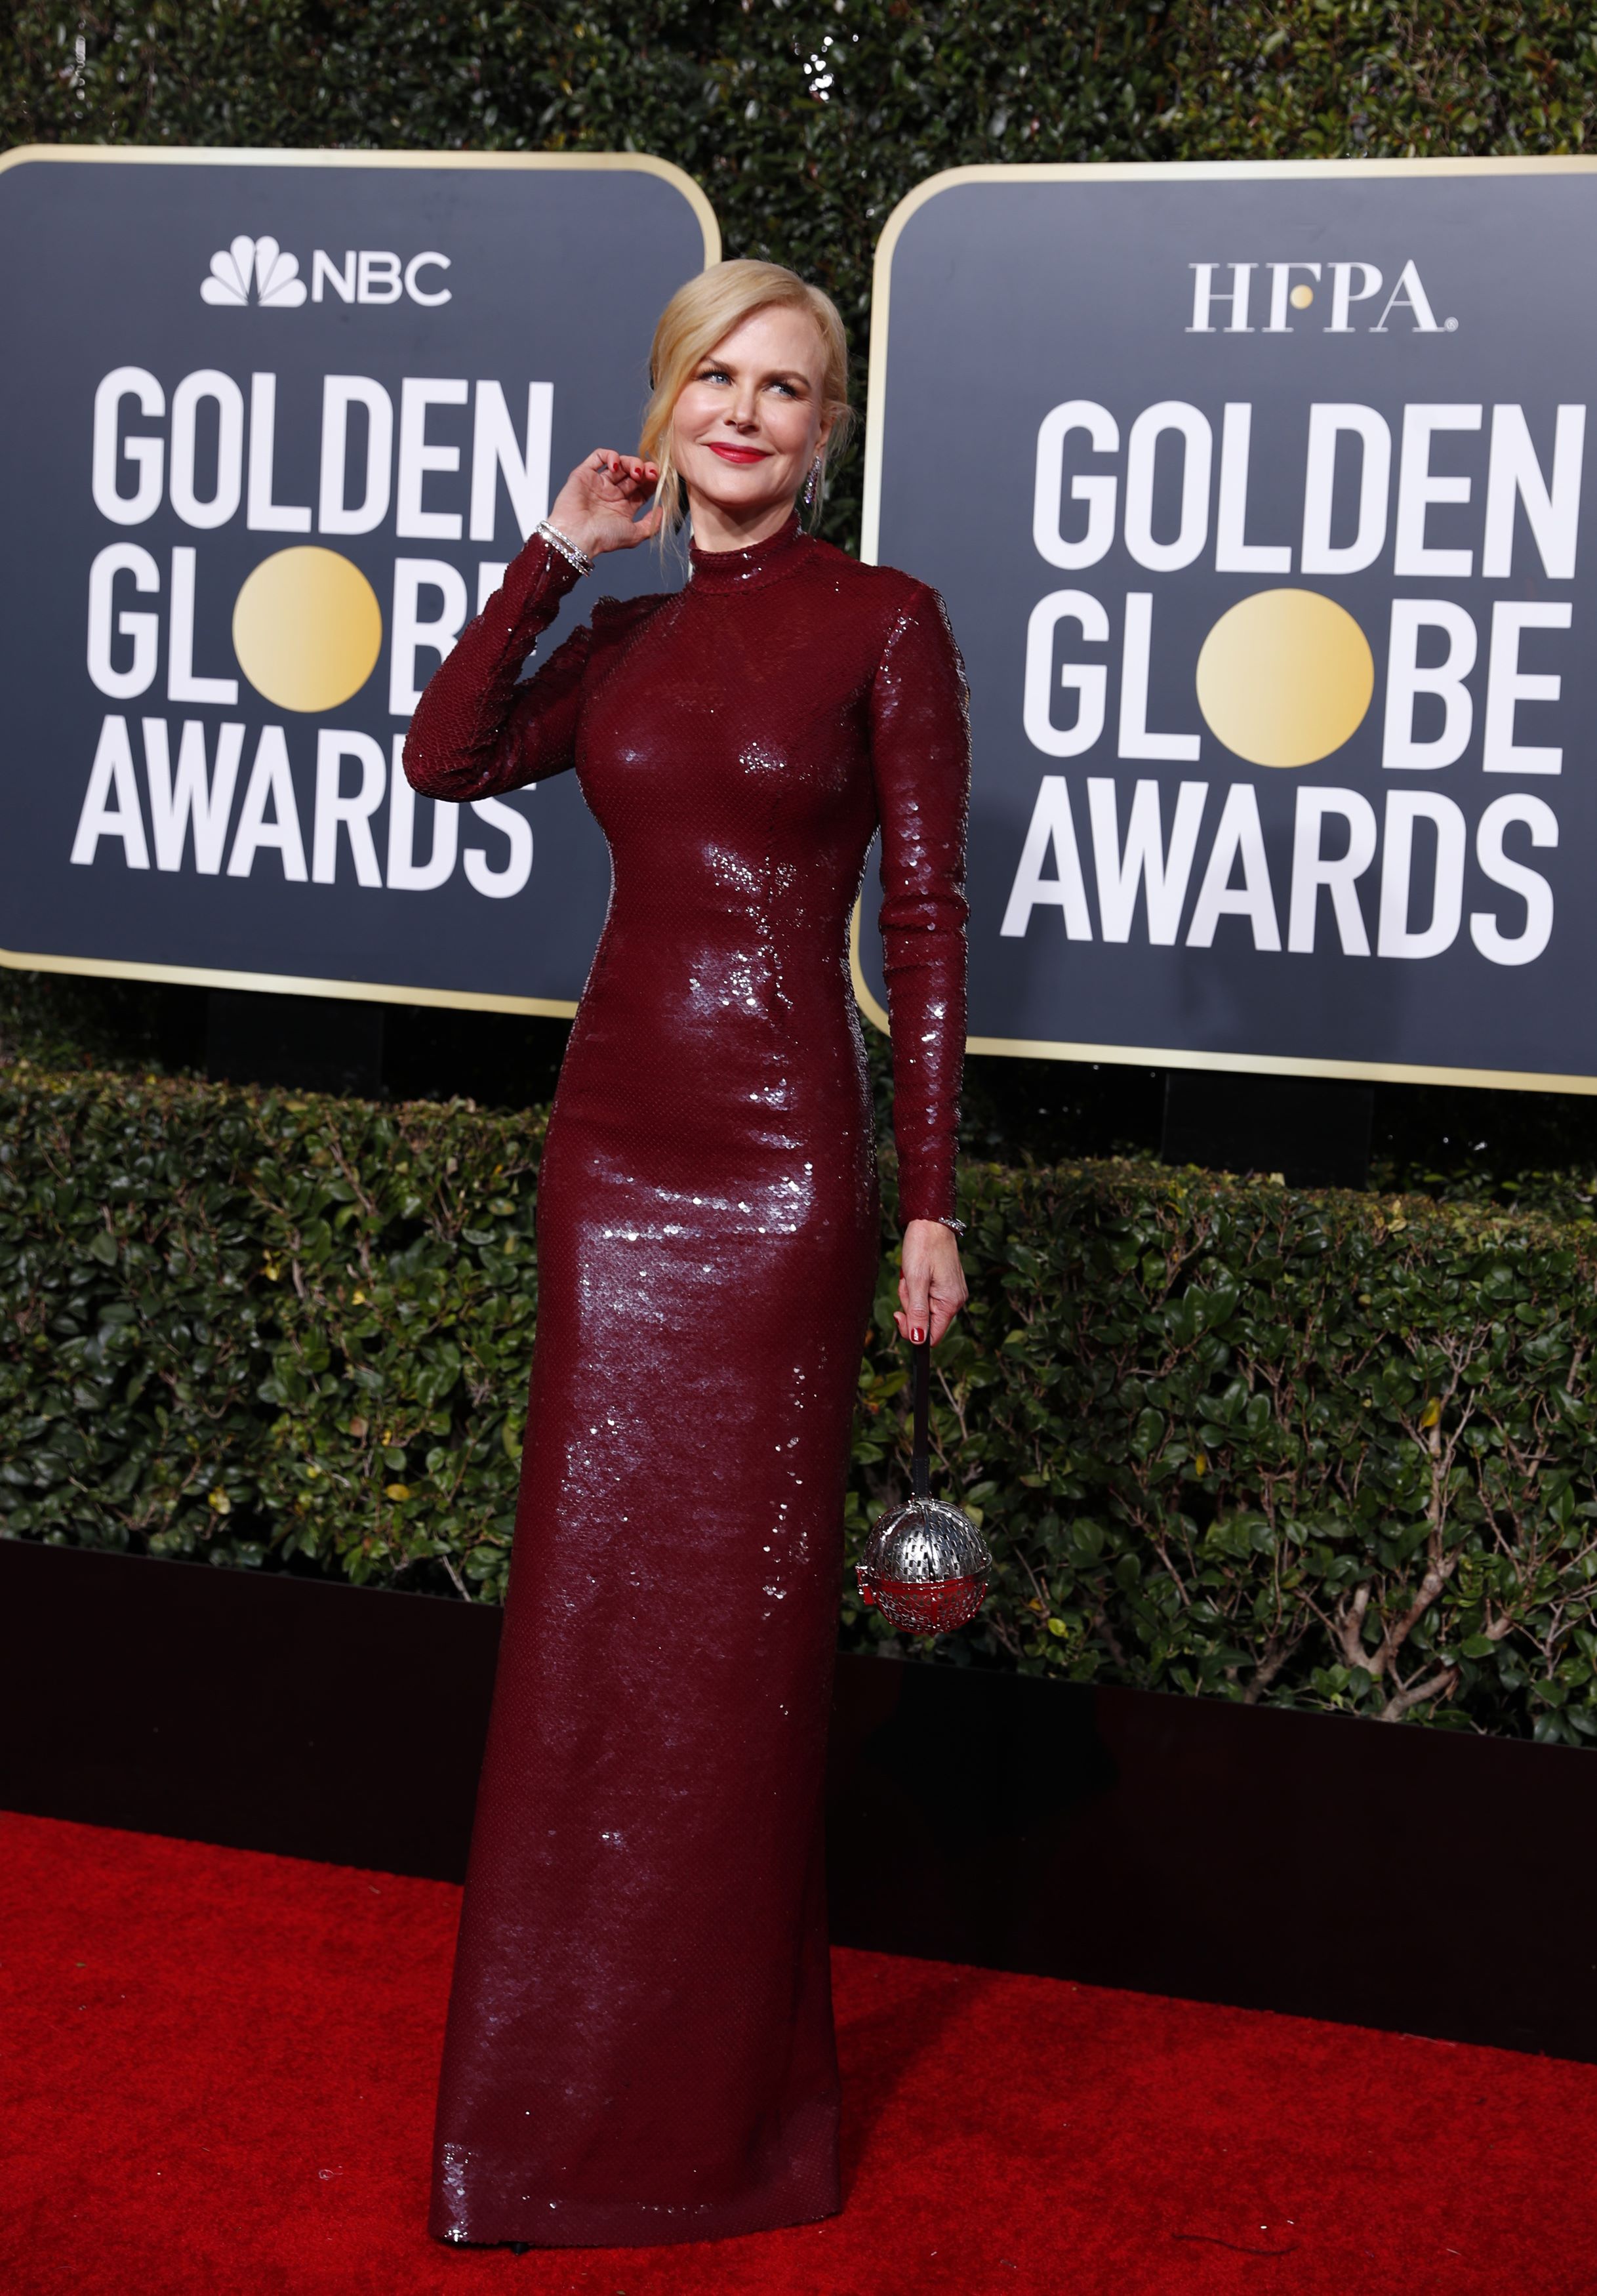 FOTOS] El atrevido vestido de Nicole Kidman en los Globos de Oro -  Meganoticias